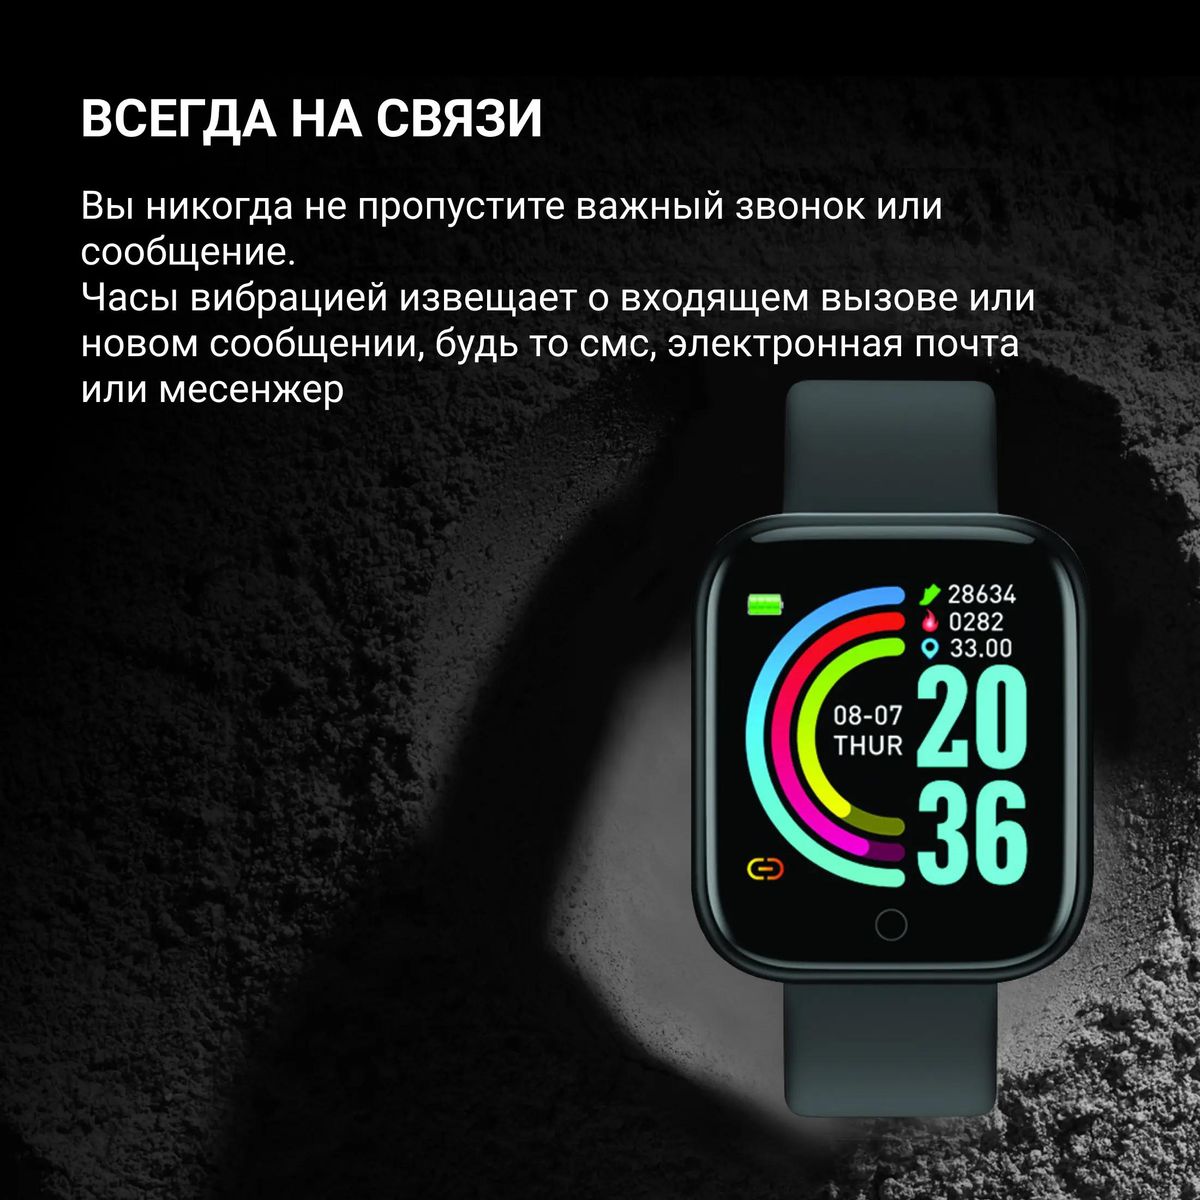 Смарт-часы Digma Smartline R1,  1.3",  черный